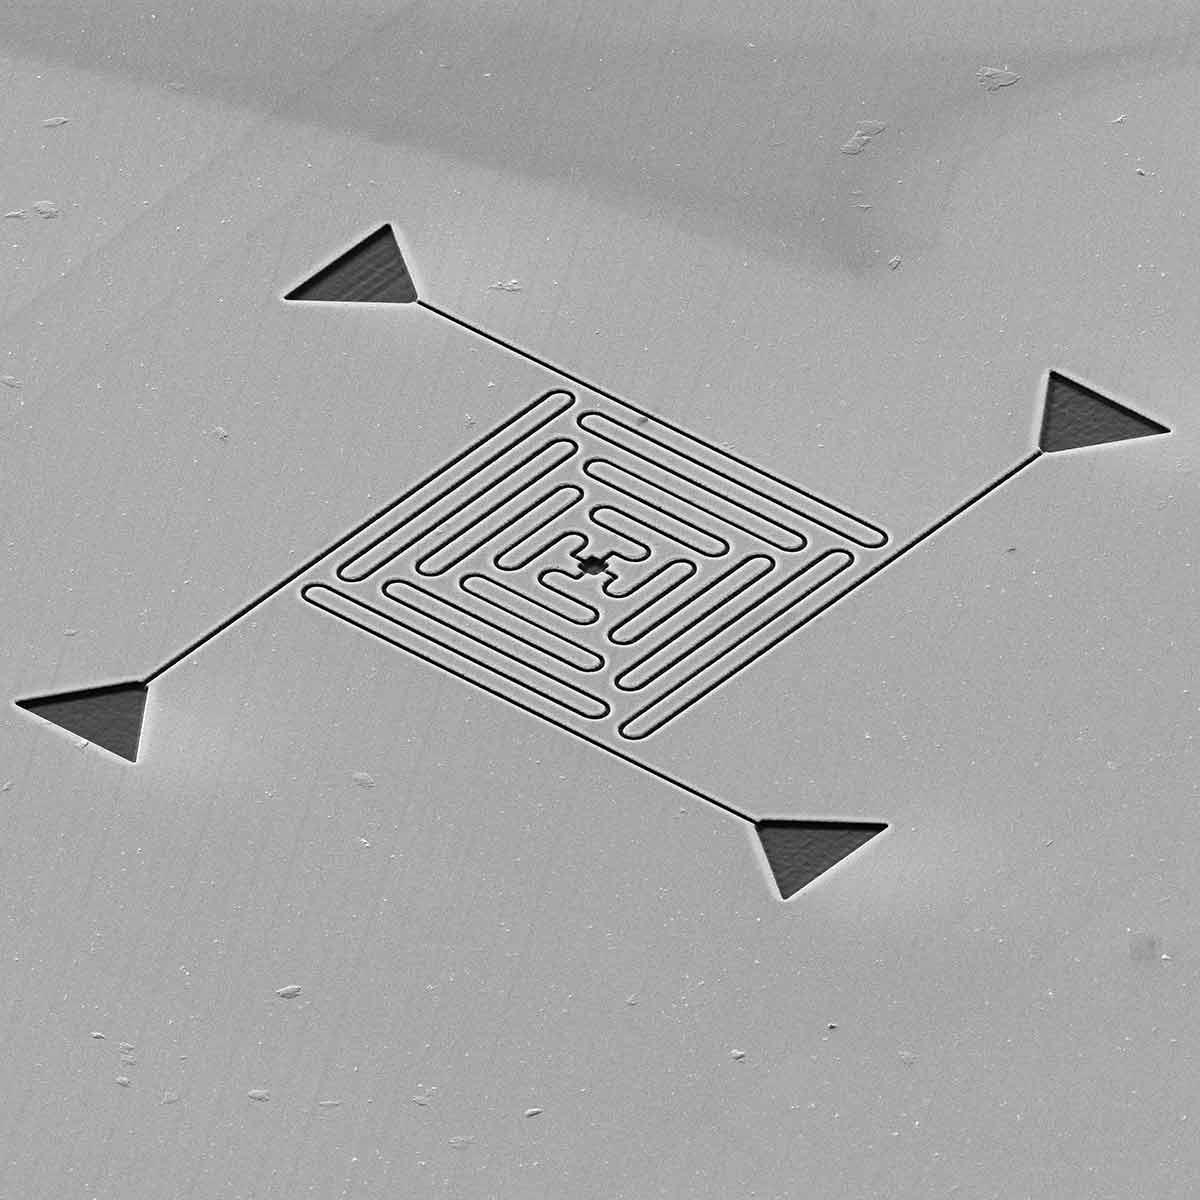 微流控示例：采用不同参数加工的20 nm宽纳米通道，长度可达20 μm。